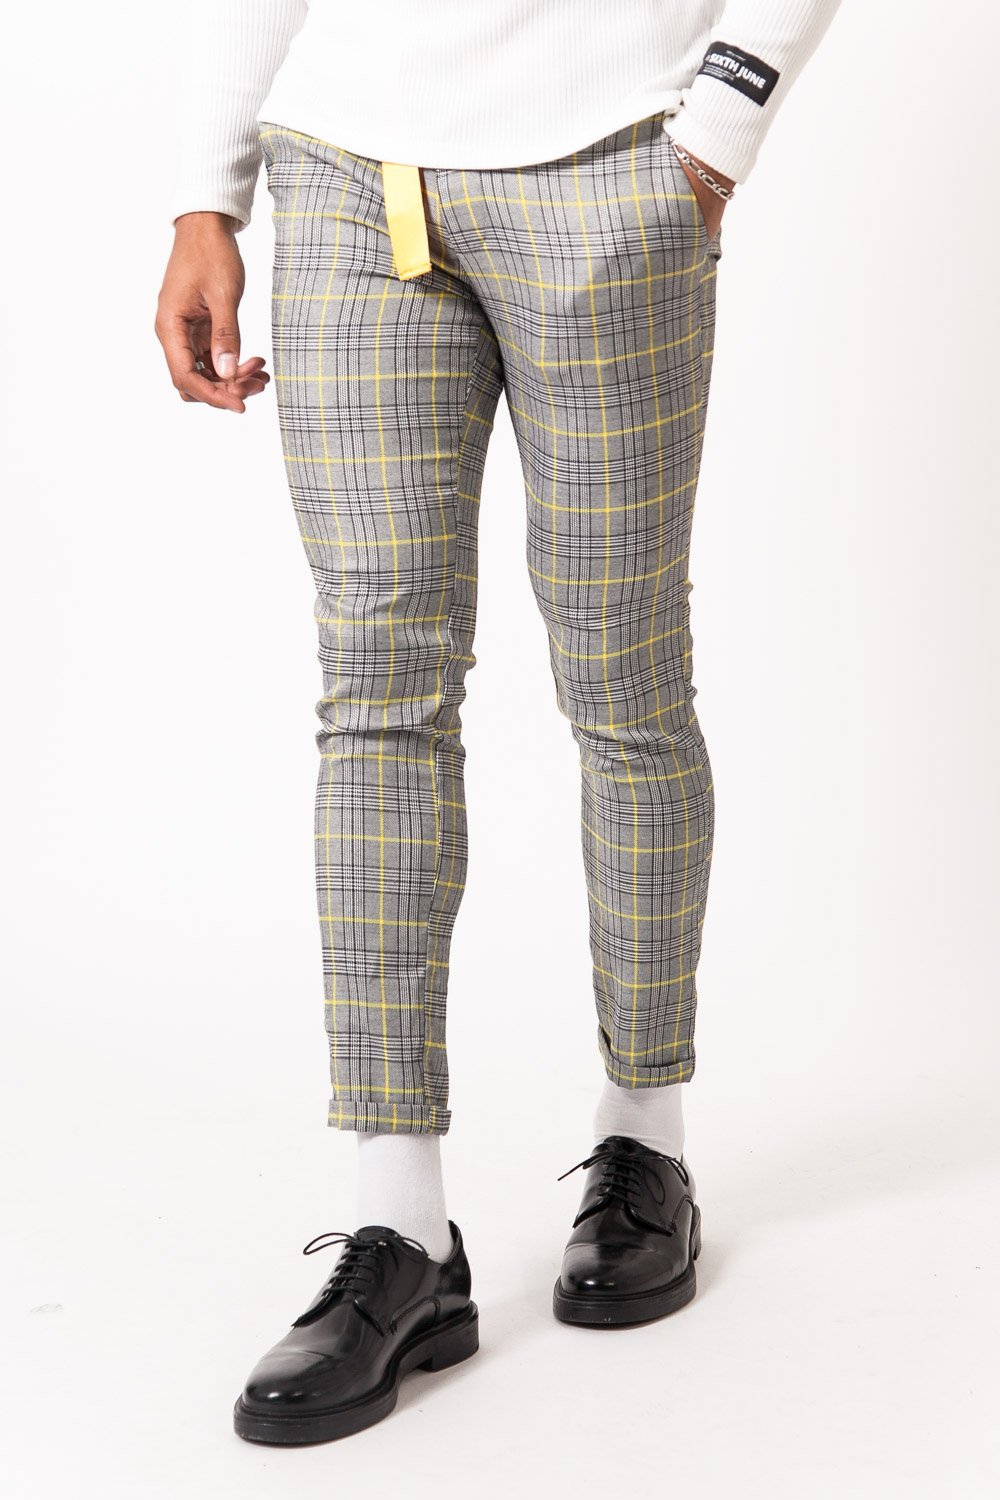 COMME des GARCONS Plaid Wool Cargo Pants Trousers YellowBlack S  PLAYFUL